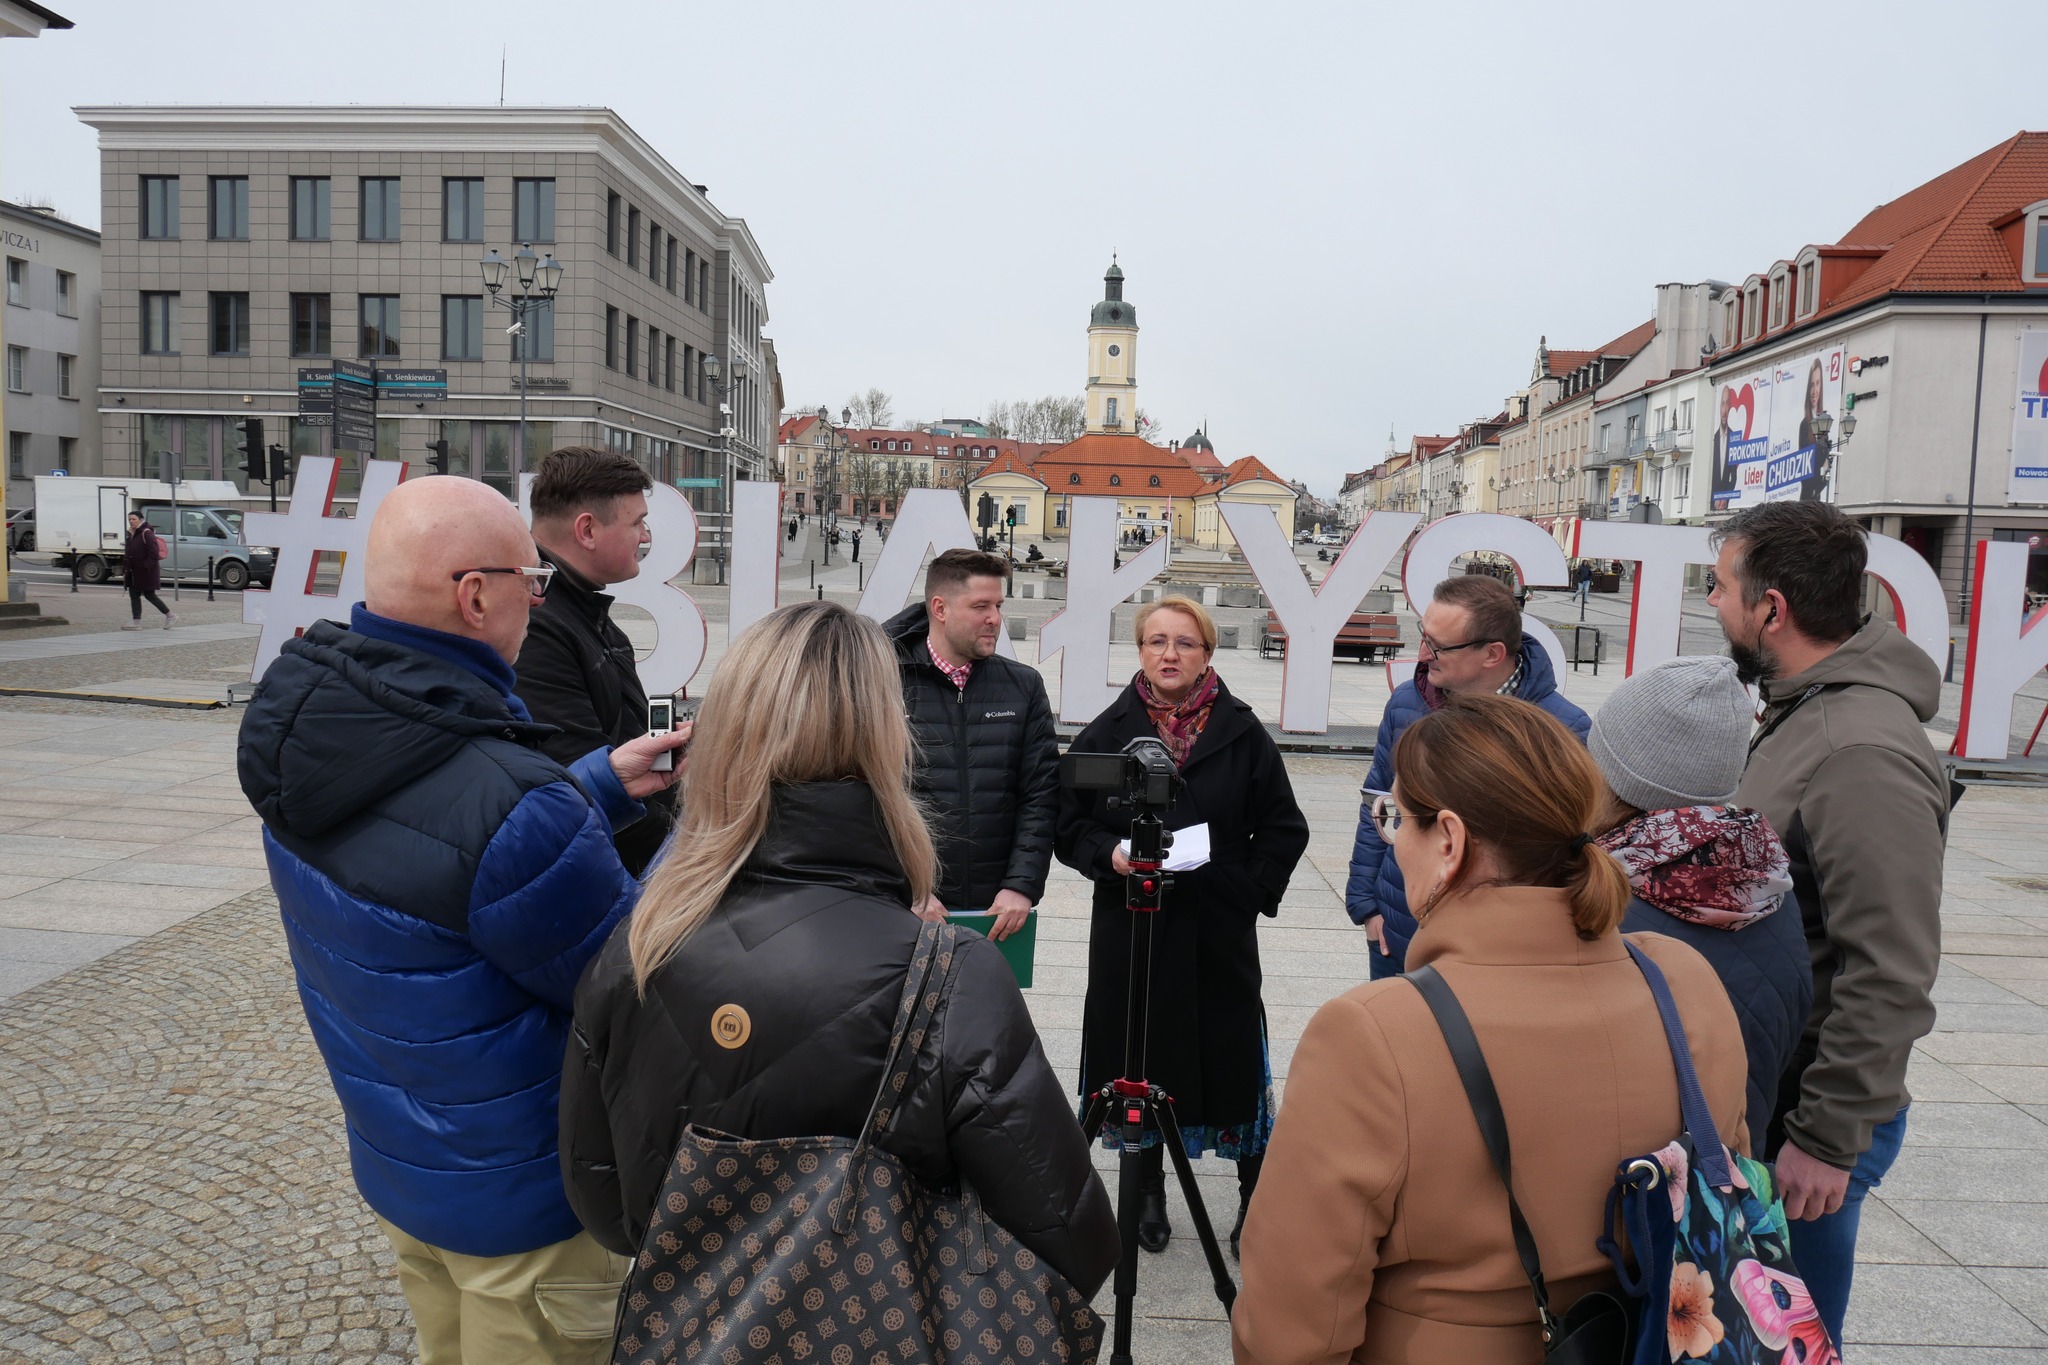 Kilka osób stoi na Rynku Kościuszki w centrum Białegostoku. W tle widać ratusz miejski. Jest to konferencja prasowa, trzy osoby wypowiadają się do mikrofonu. Dziennikarze i dziennikarki stoją w pierwszym planie.